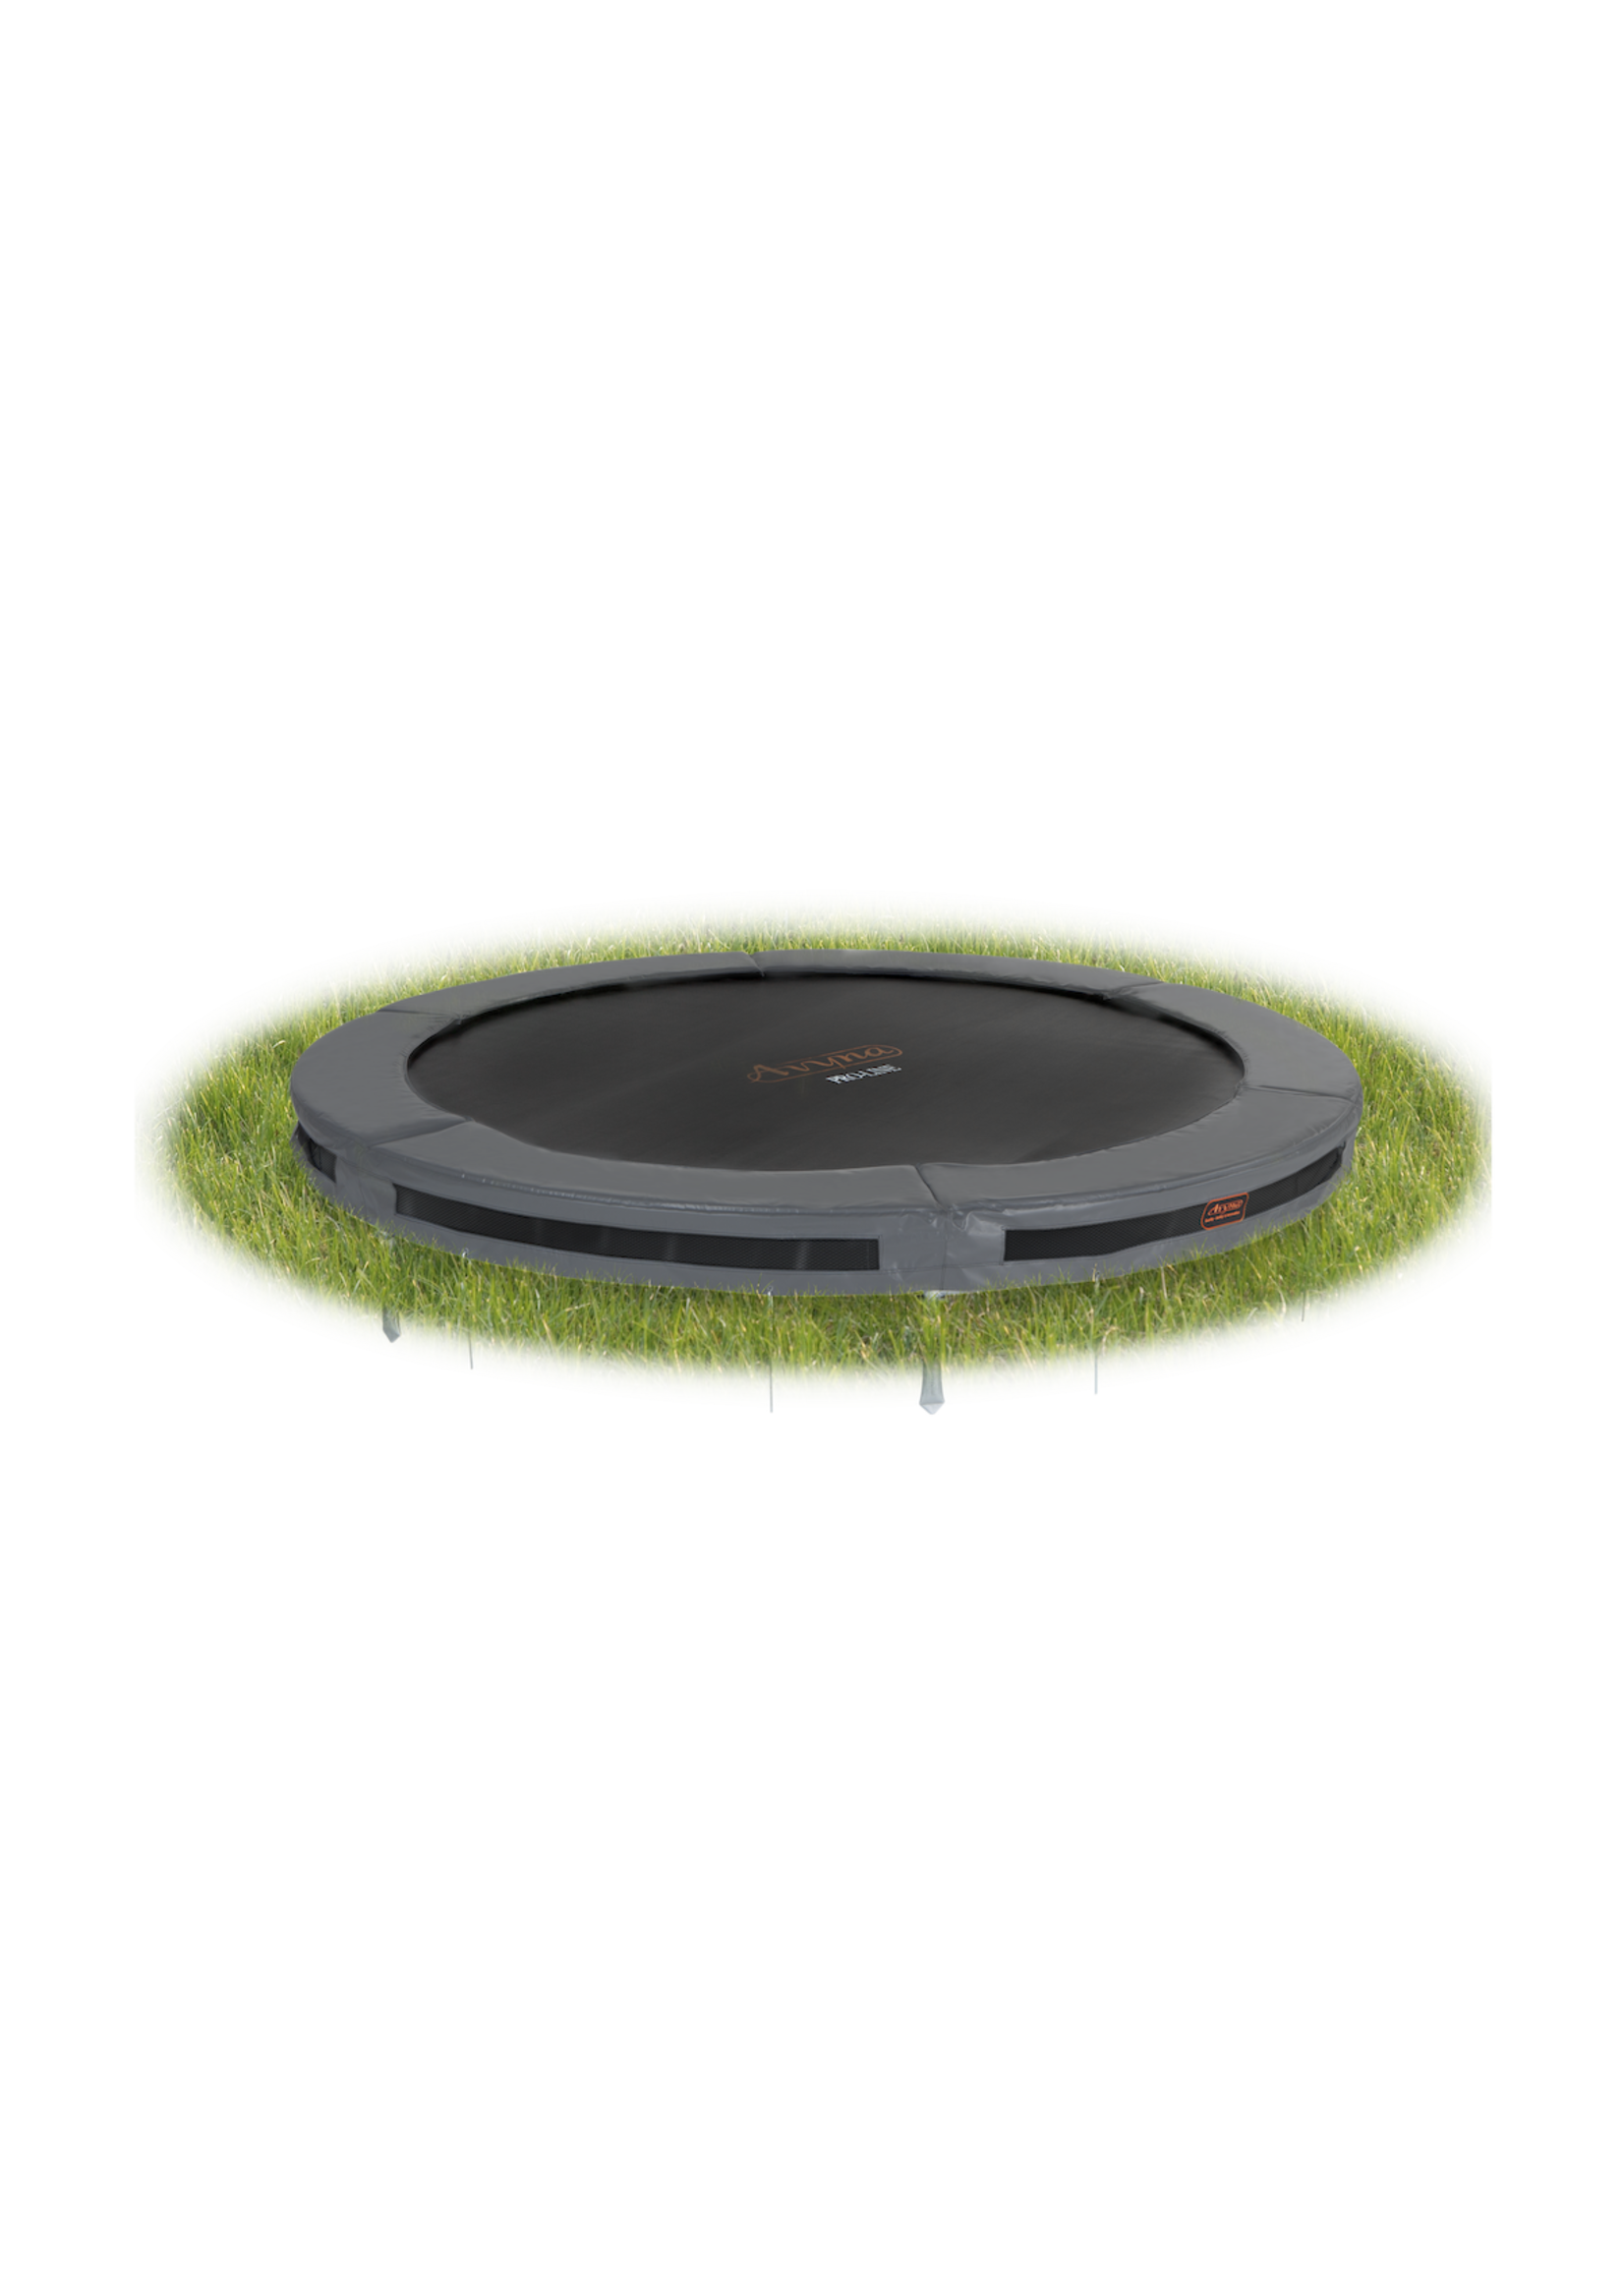 Avyna De ideale ronde trampoline voor in de grond, Inground : de Avyna Pro-Line van Ø 245 cm